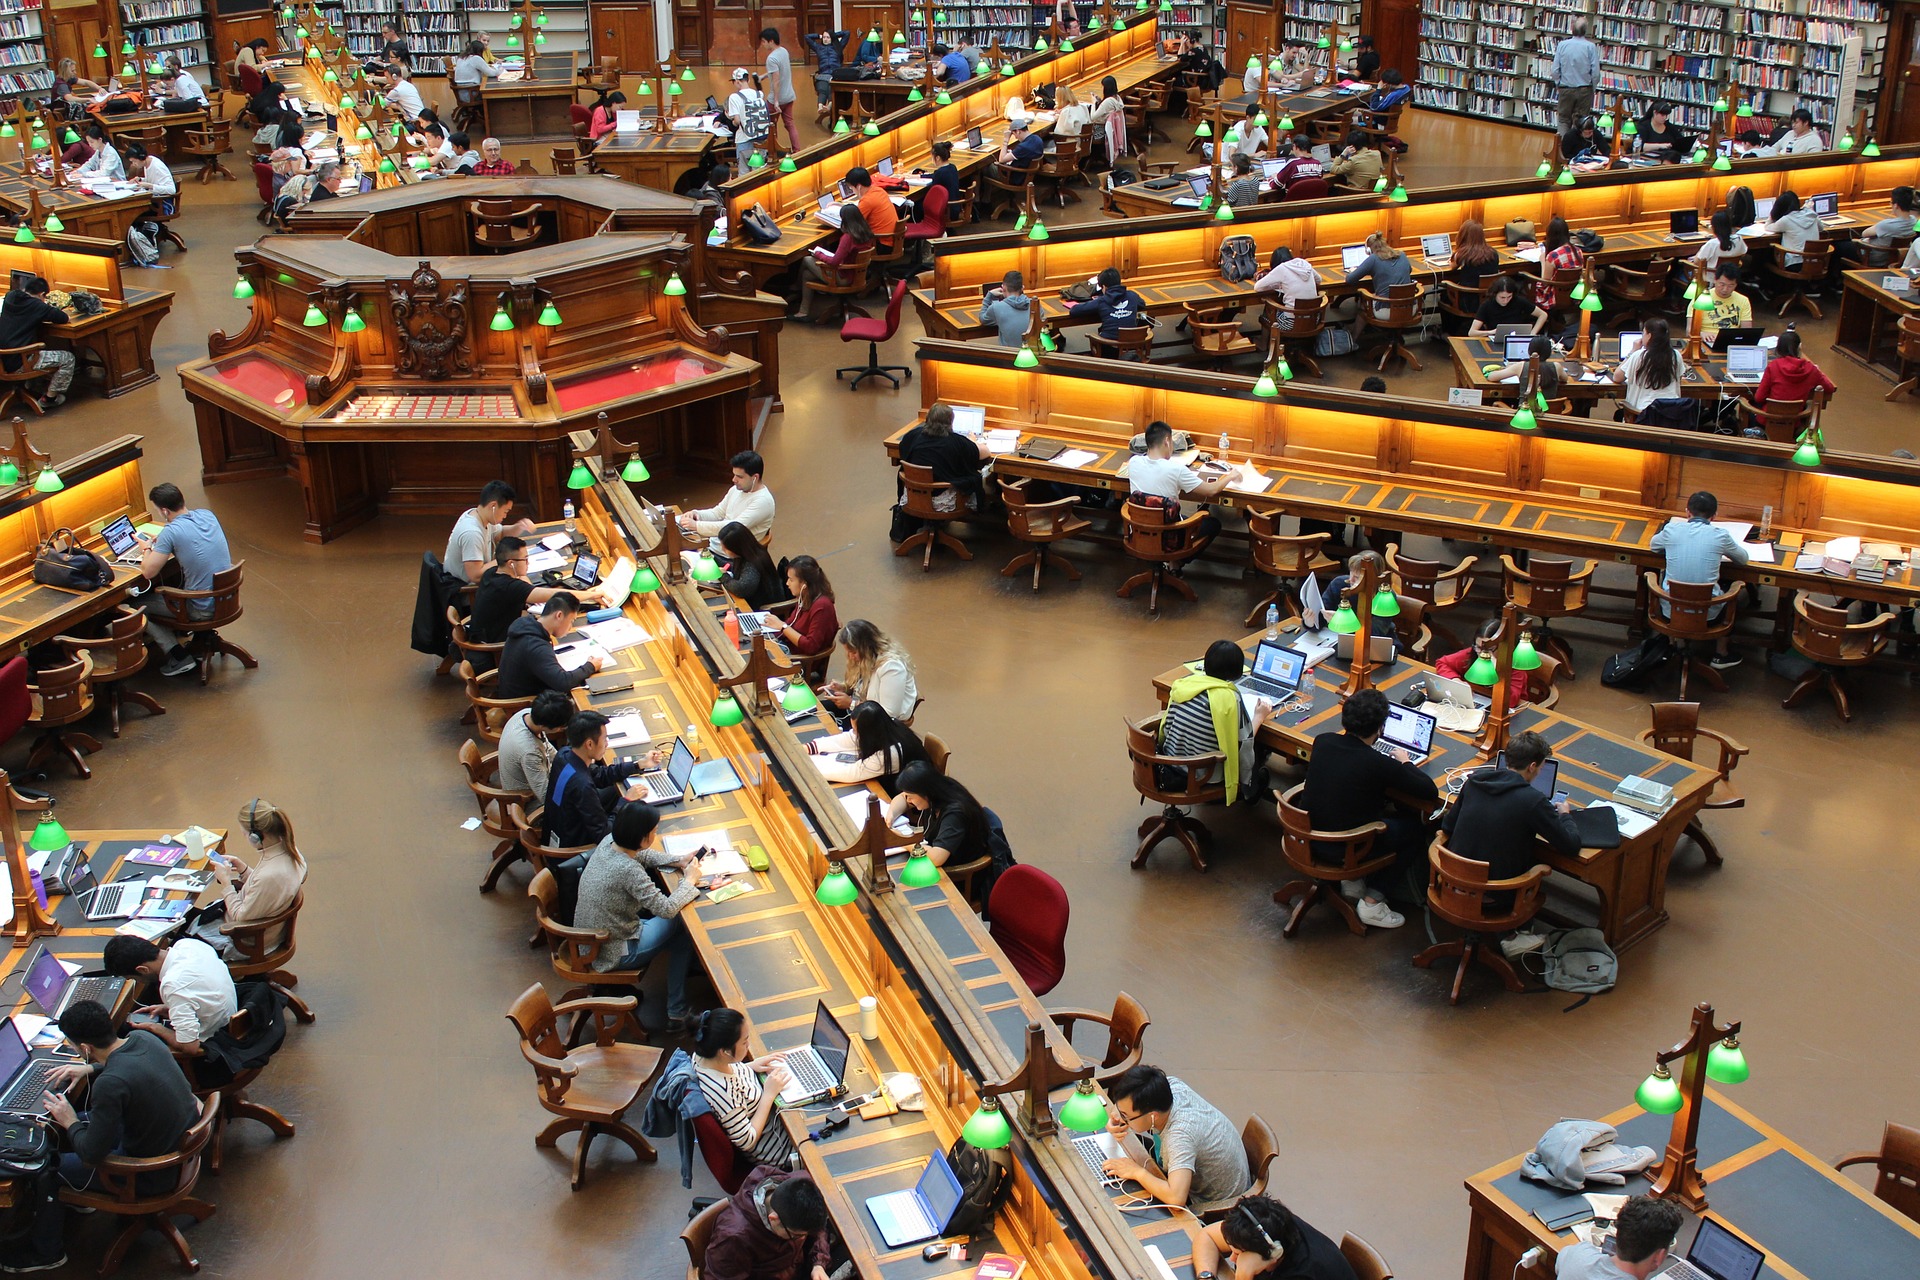 Studierende in einer Bibliothek